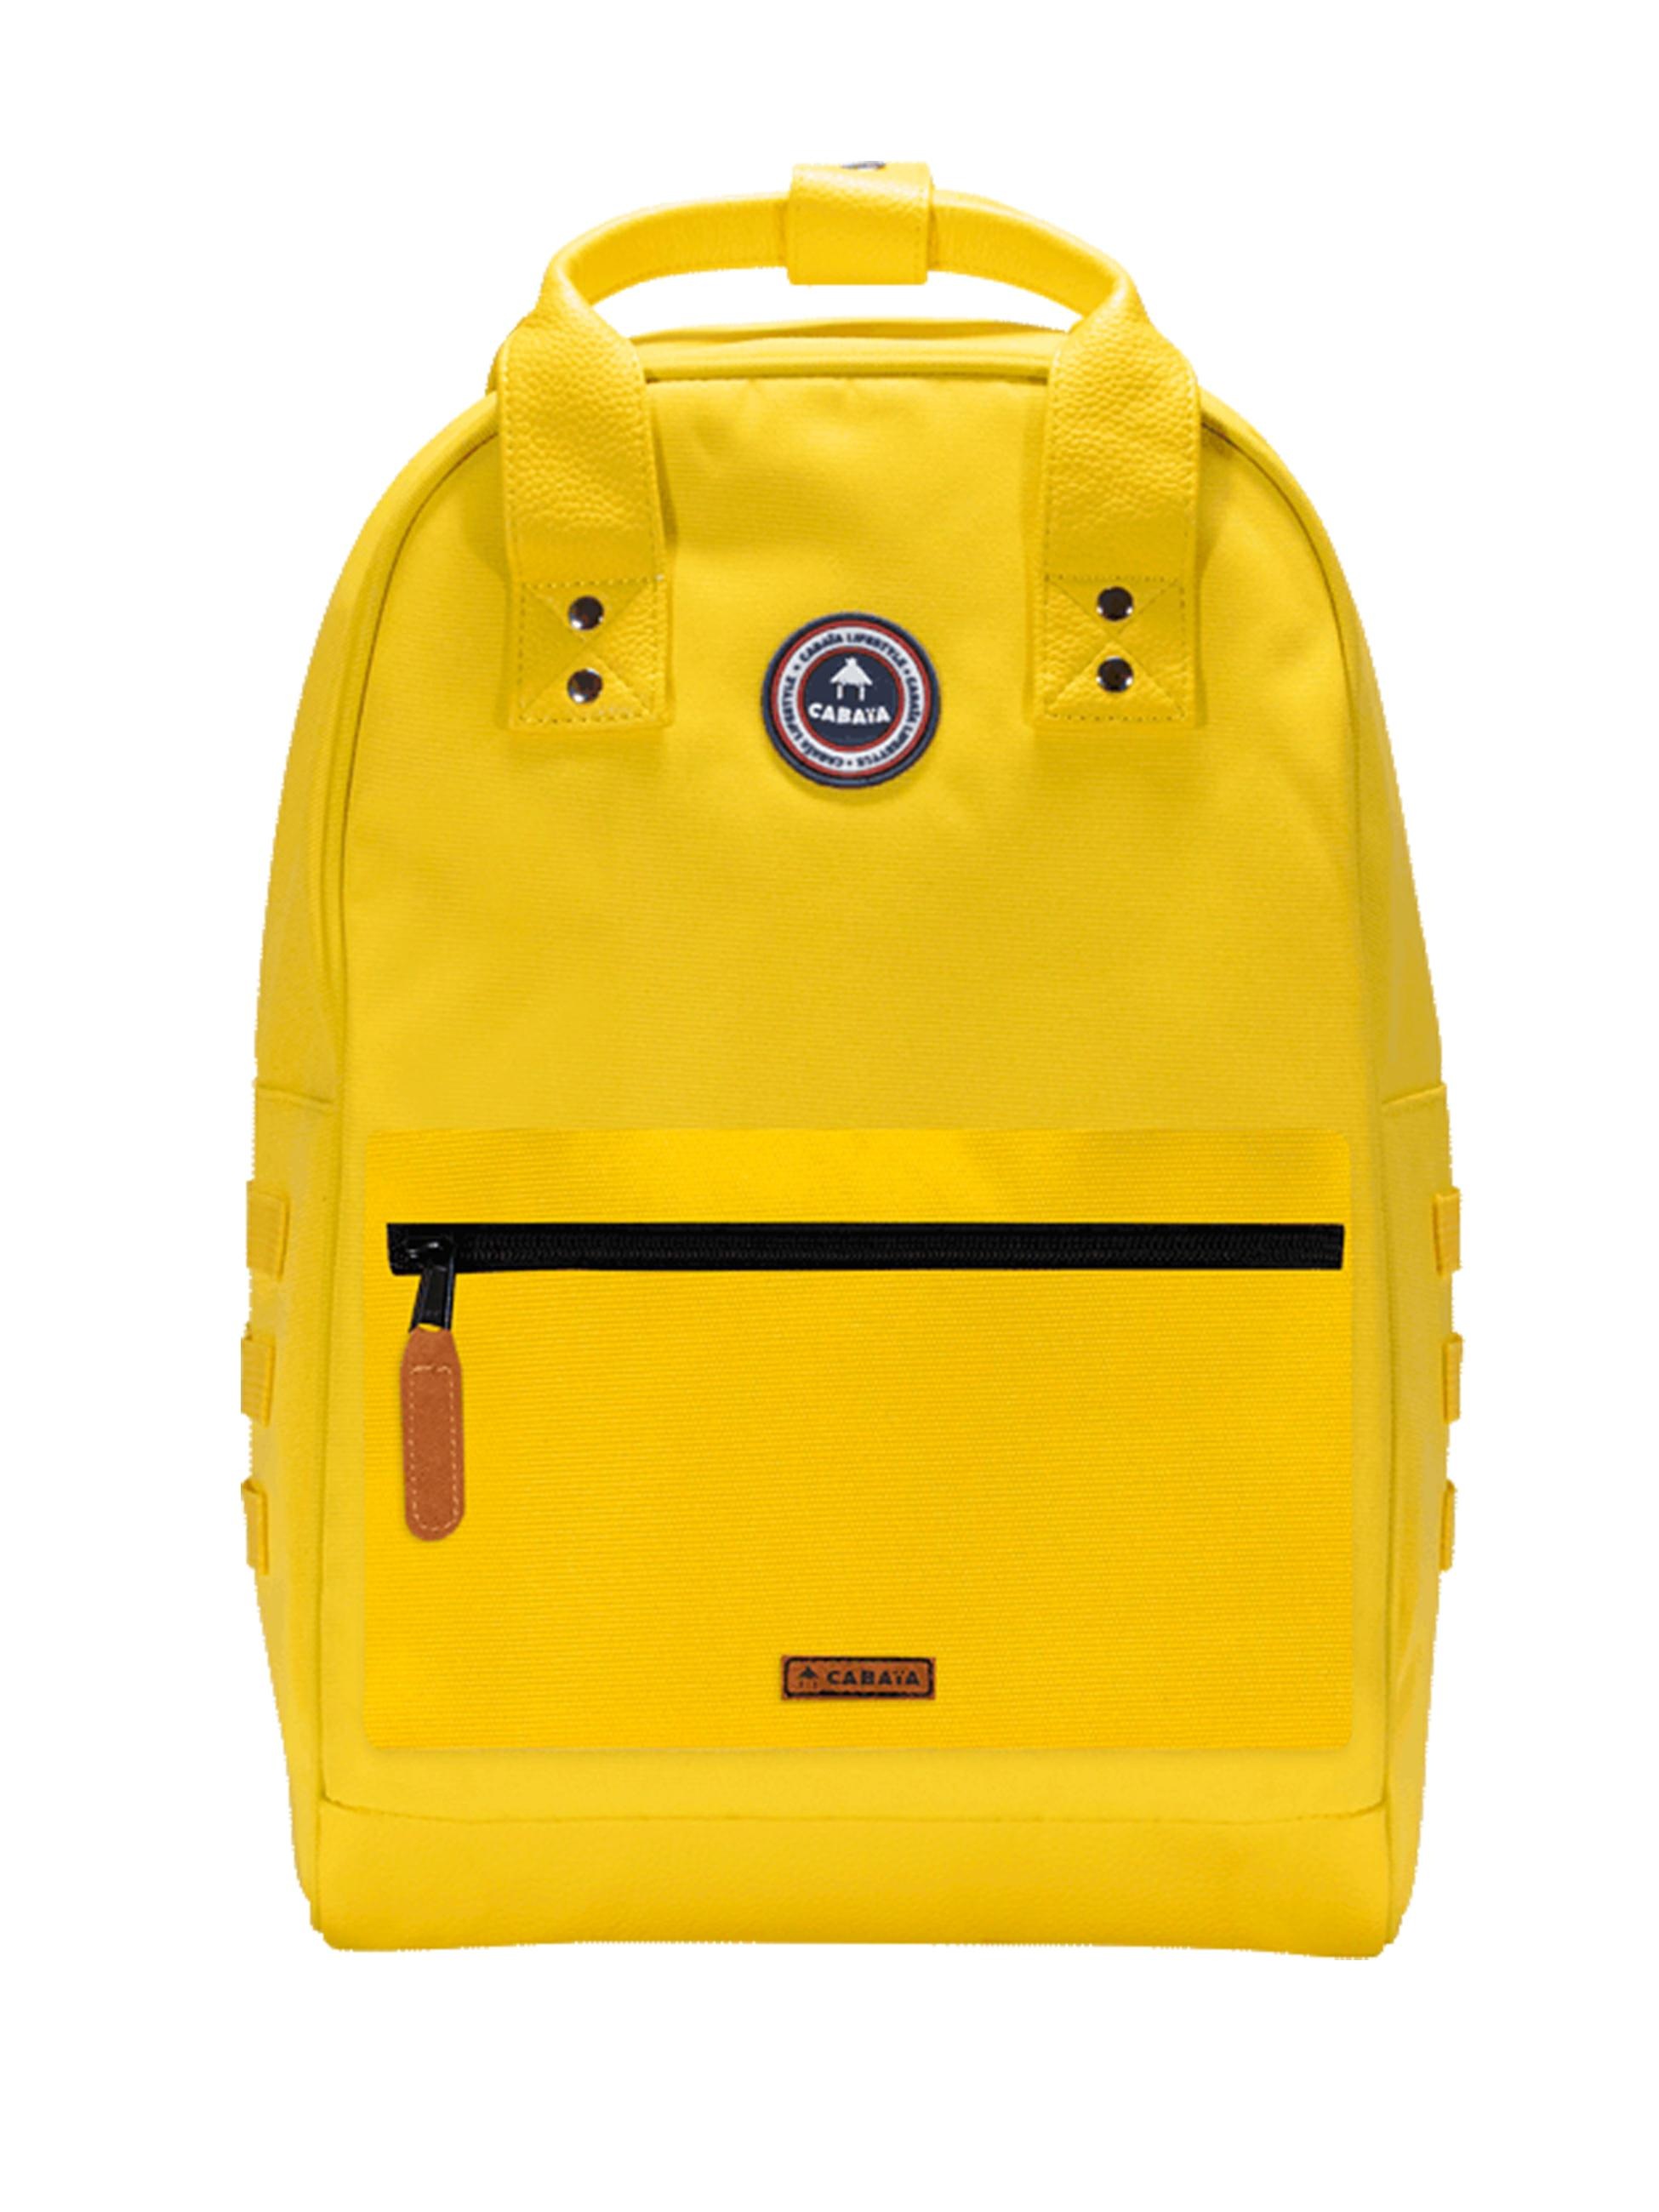 CABAIA Tagesrucksack »Old School M Recycled«, Cityrucksack mit austauschbaren Vordertaschen